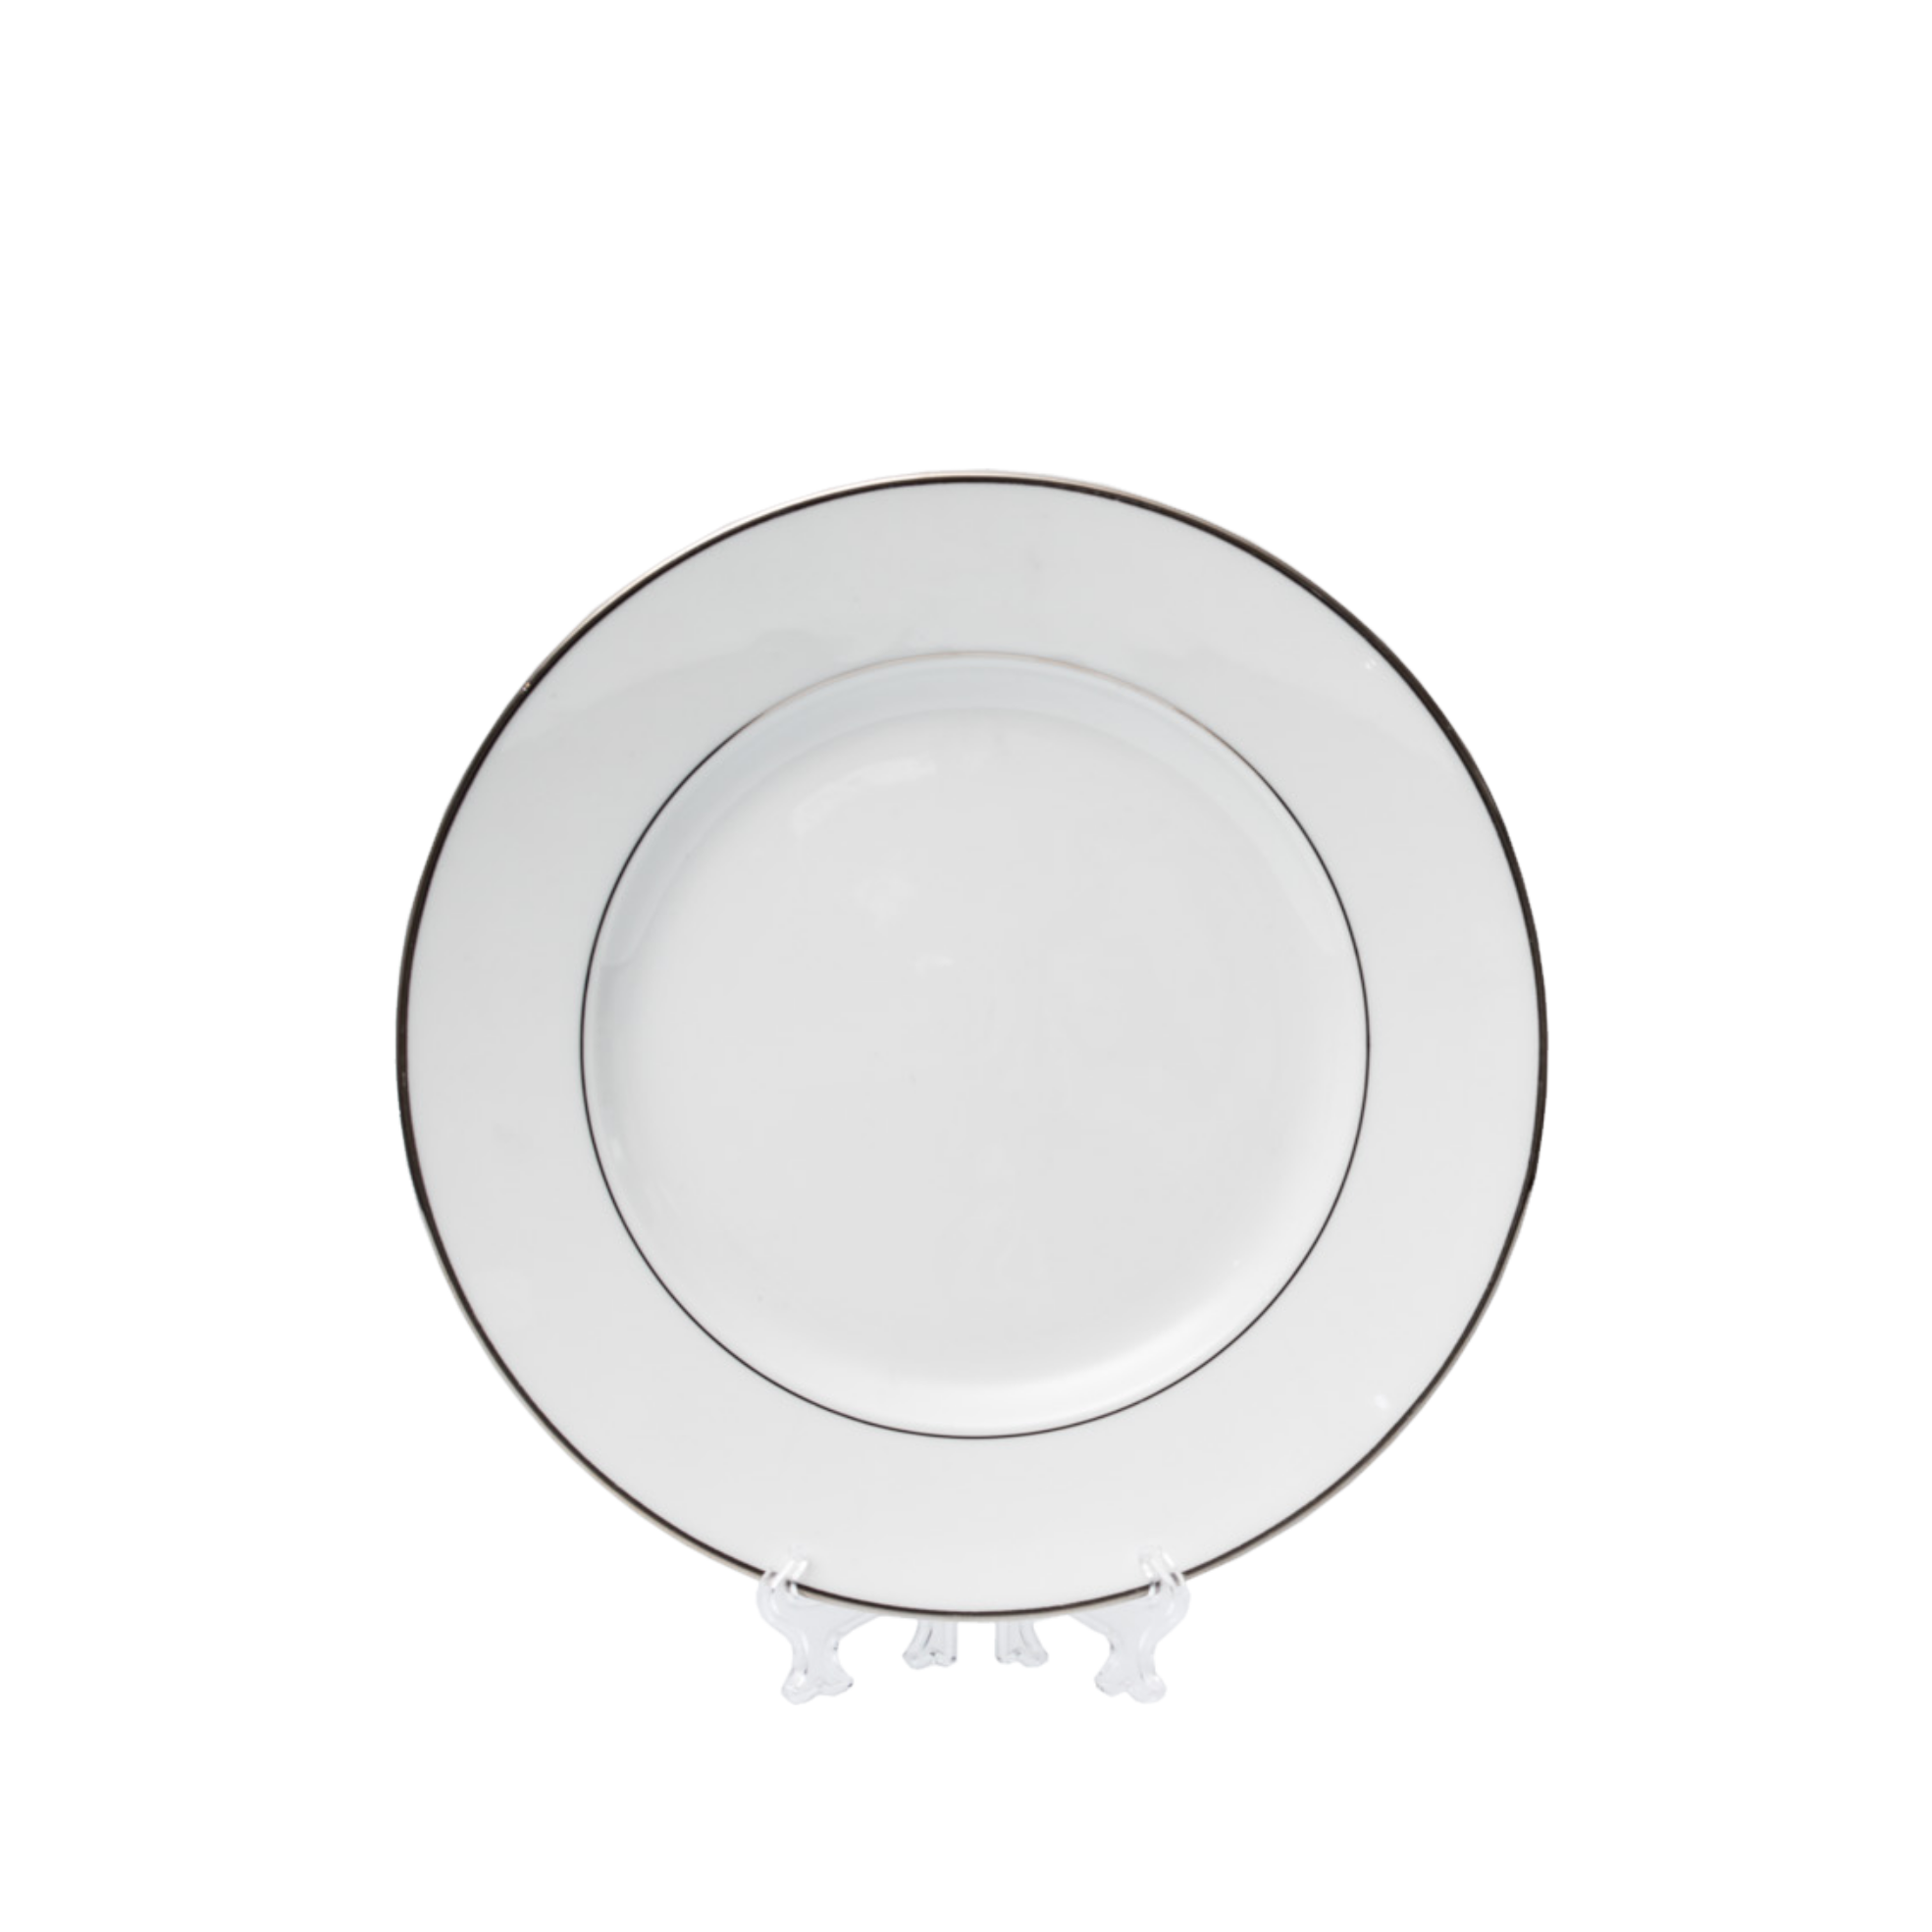 DINNER Plate Impero Platinum cm 26,5 (33 each container) 